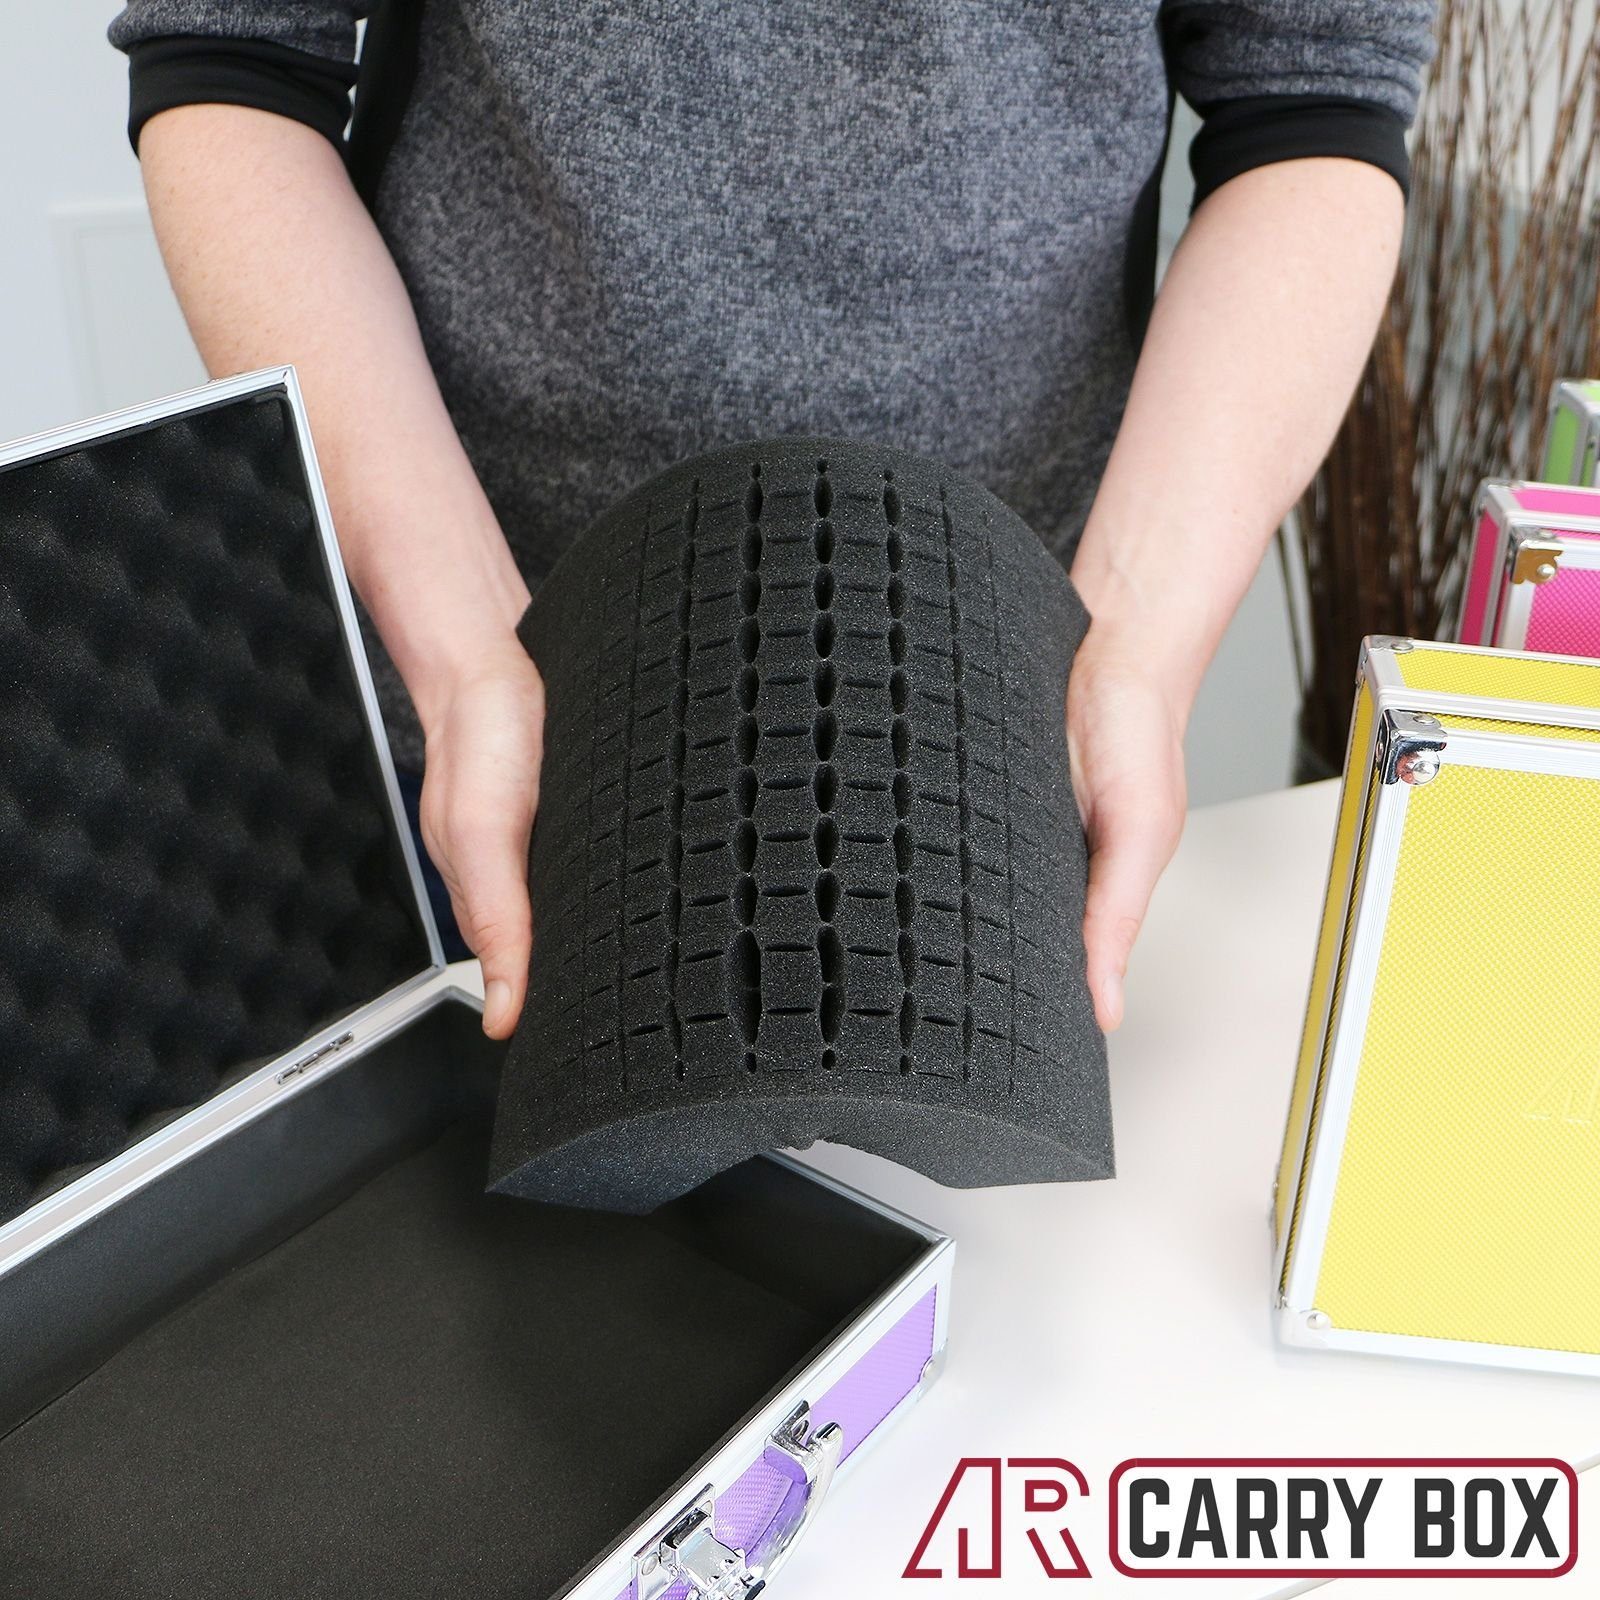 mit Koffer Box ECI Farben Aluminium verschiedene Schaumstoffeinlage (LxBxH Werkzeugkoffer Pink Tools